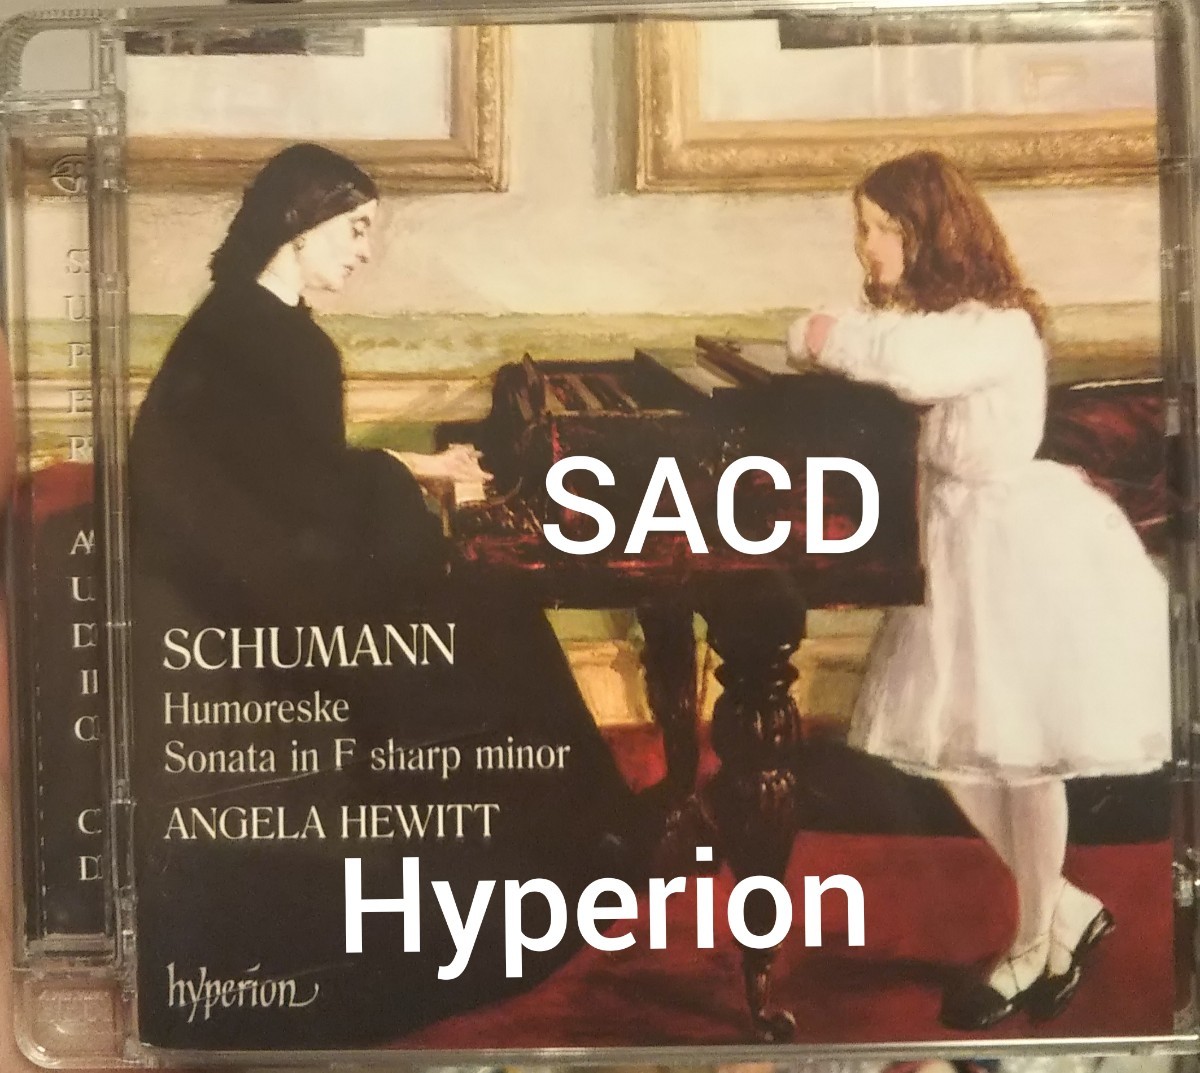 SACD シューマン ピアノソナタ ユモレスク ハイペリオン Hyperion Schumann humoreske angela hewitt クラシック　器楽_画像1